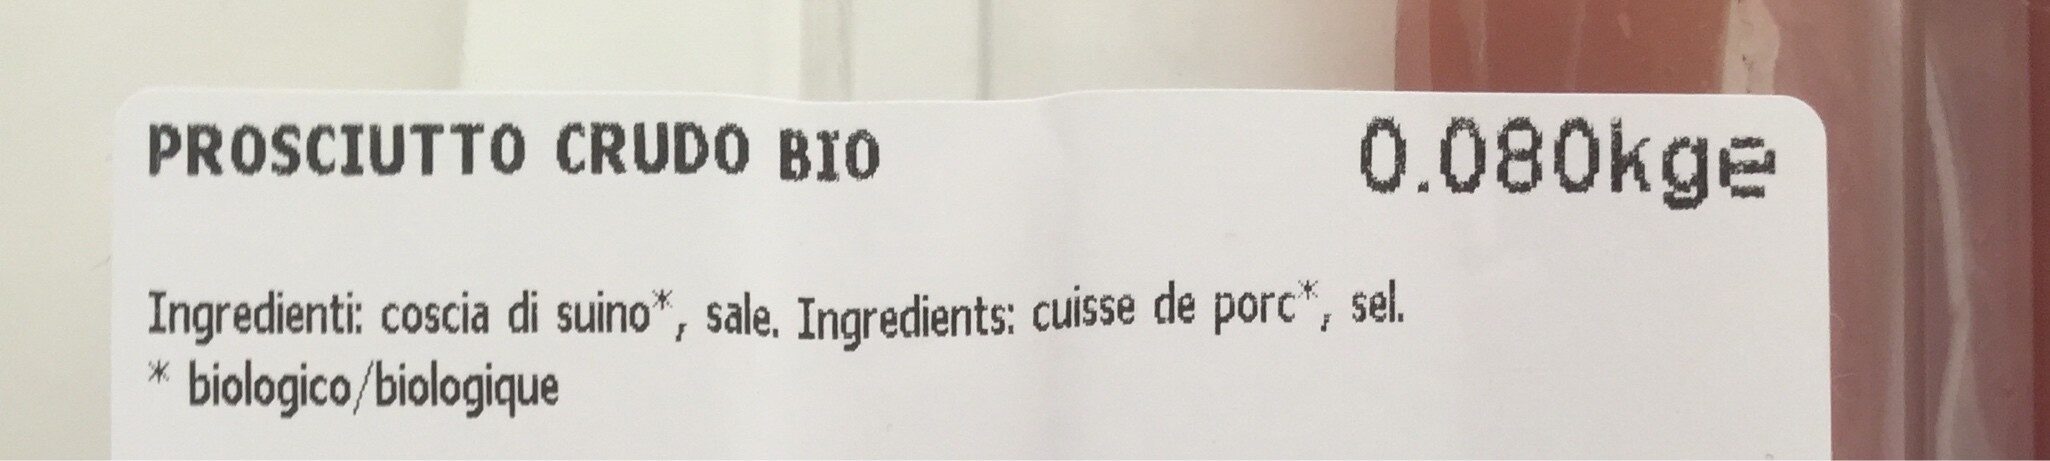 Jambon cru - Ingredienti - fr